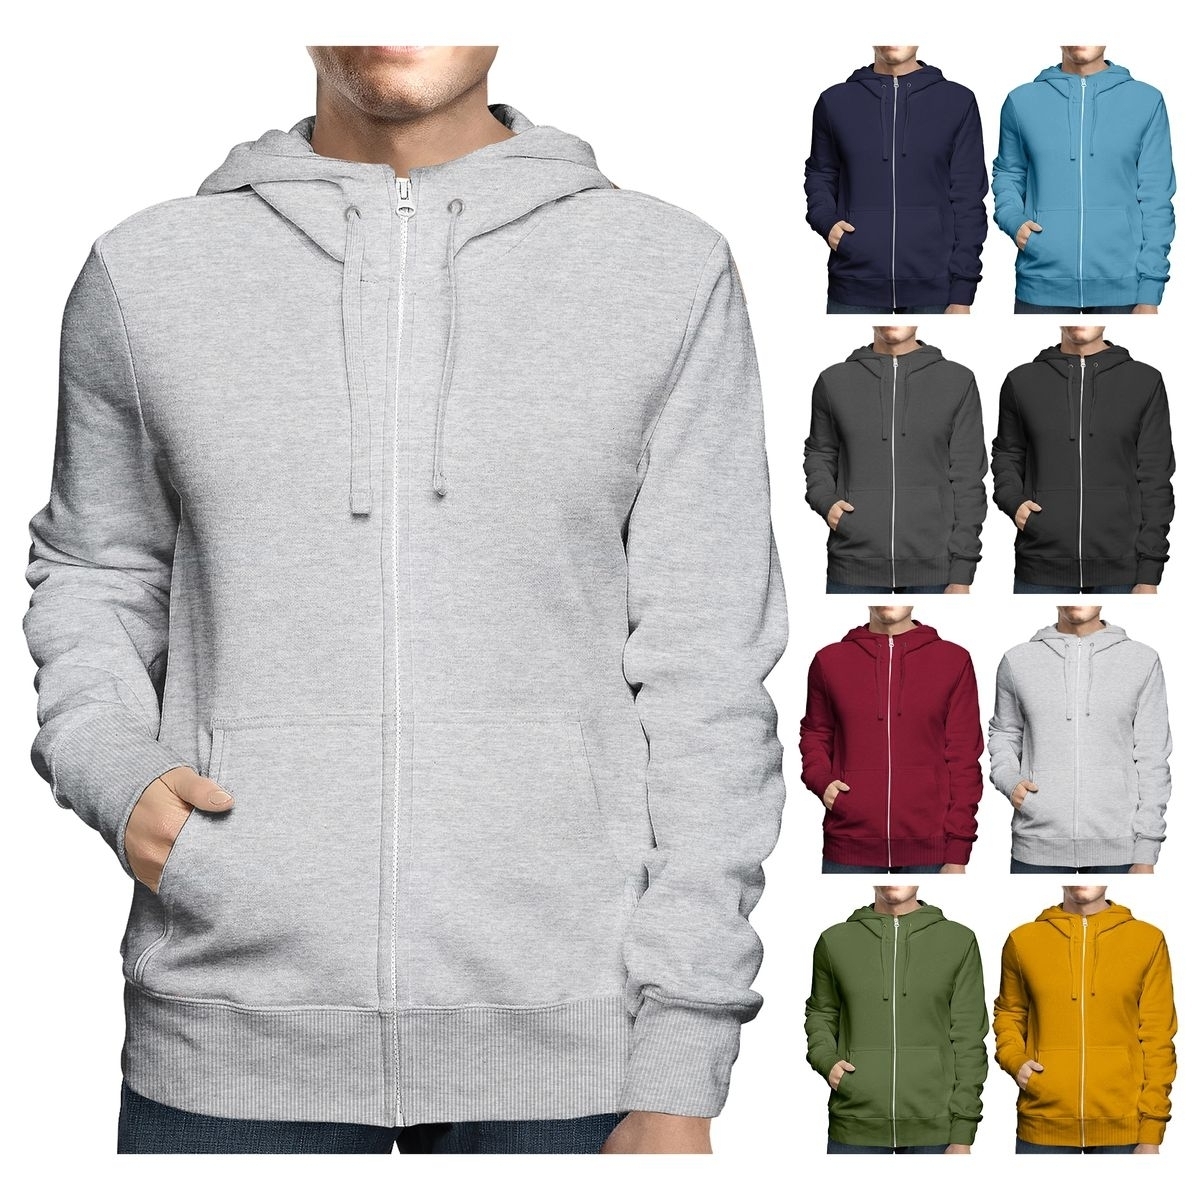 Men's Big & Tall Winter Warm Soft Cozy Full Zip-Up Fleece Lined Hoodie Sweatshirt - Grey, Small